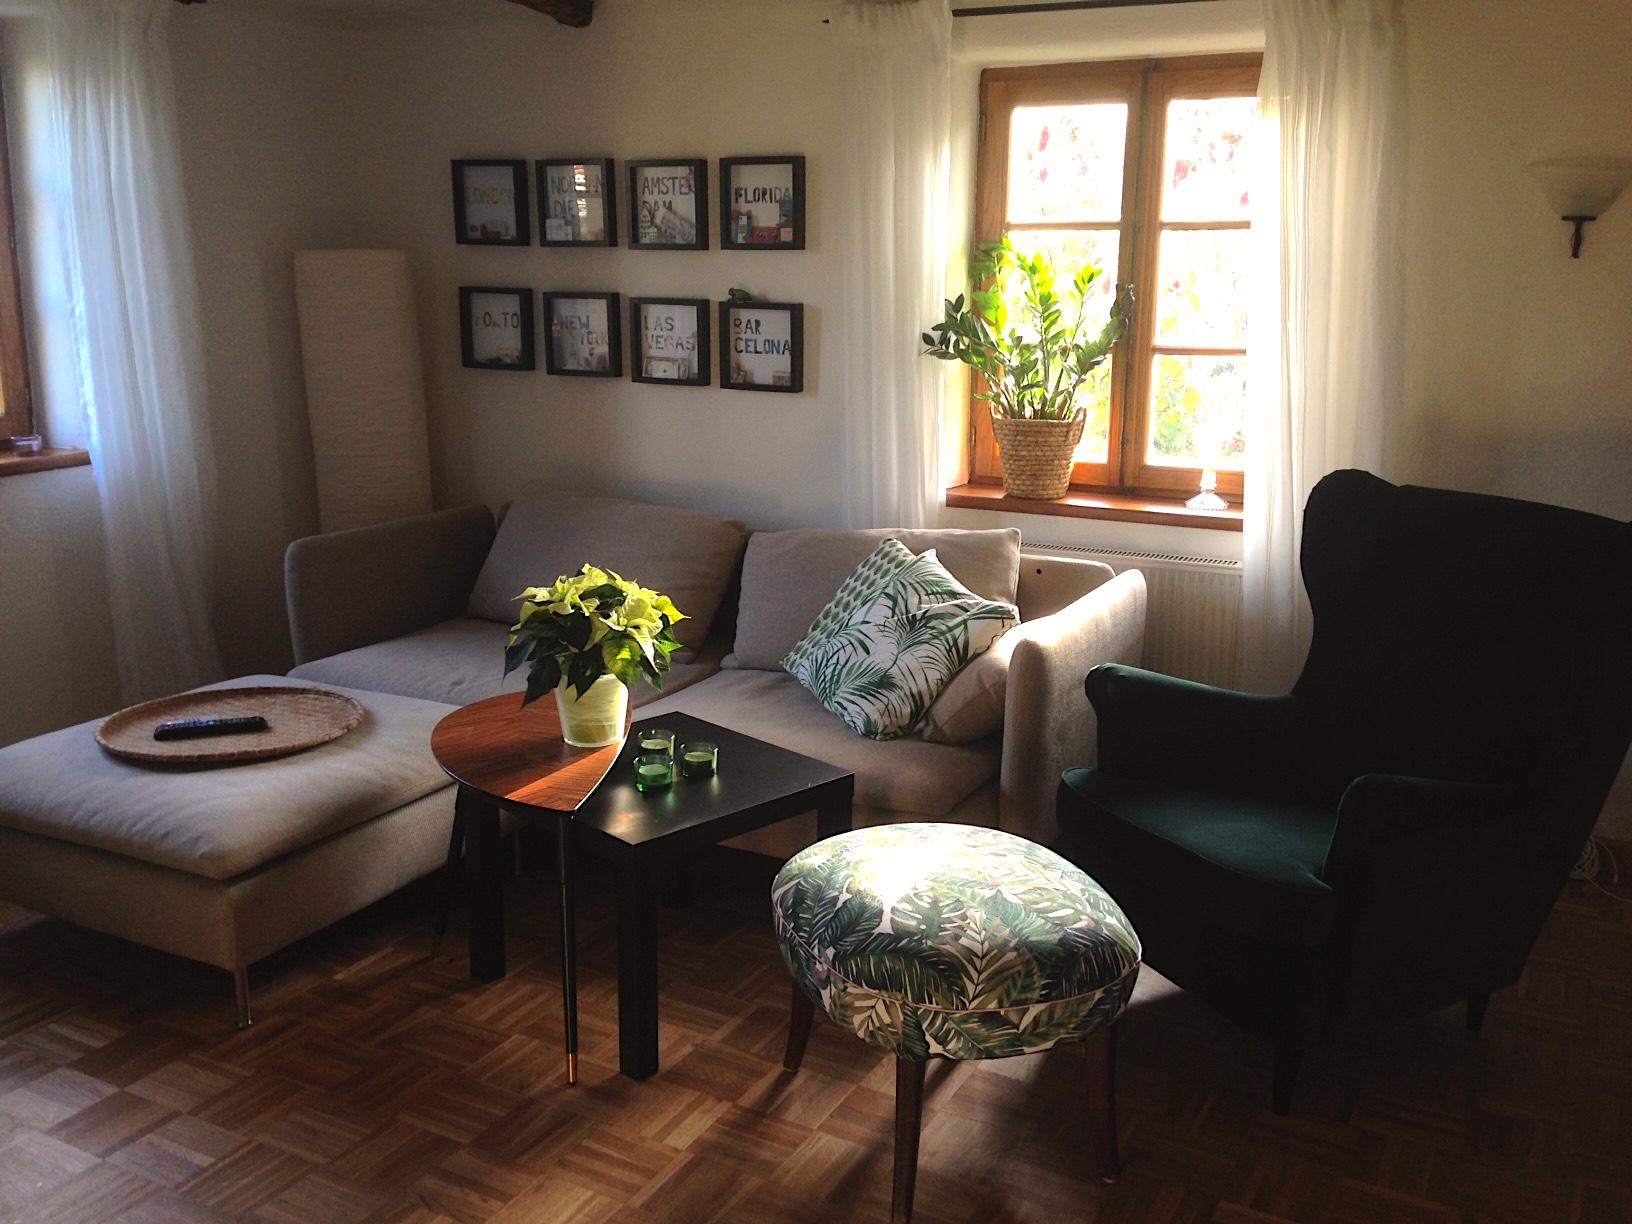 Mein Wohnzimmer - Moderne trifft Fachwerk 
#Fachwerk #Wohnzimmer #Grün #green 